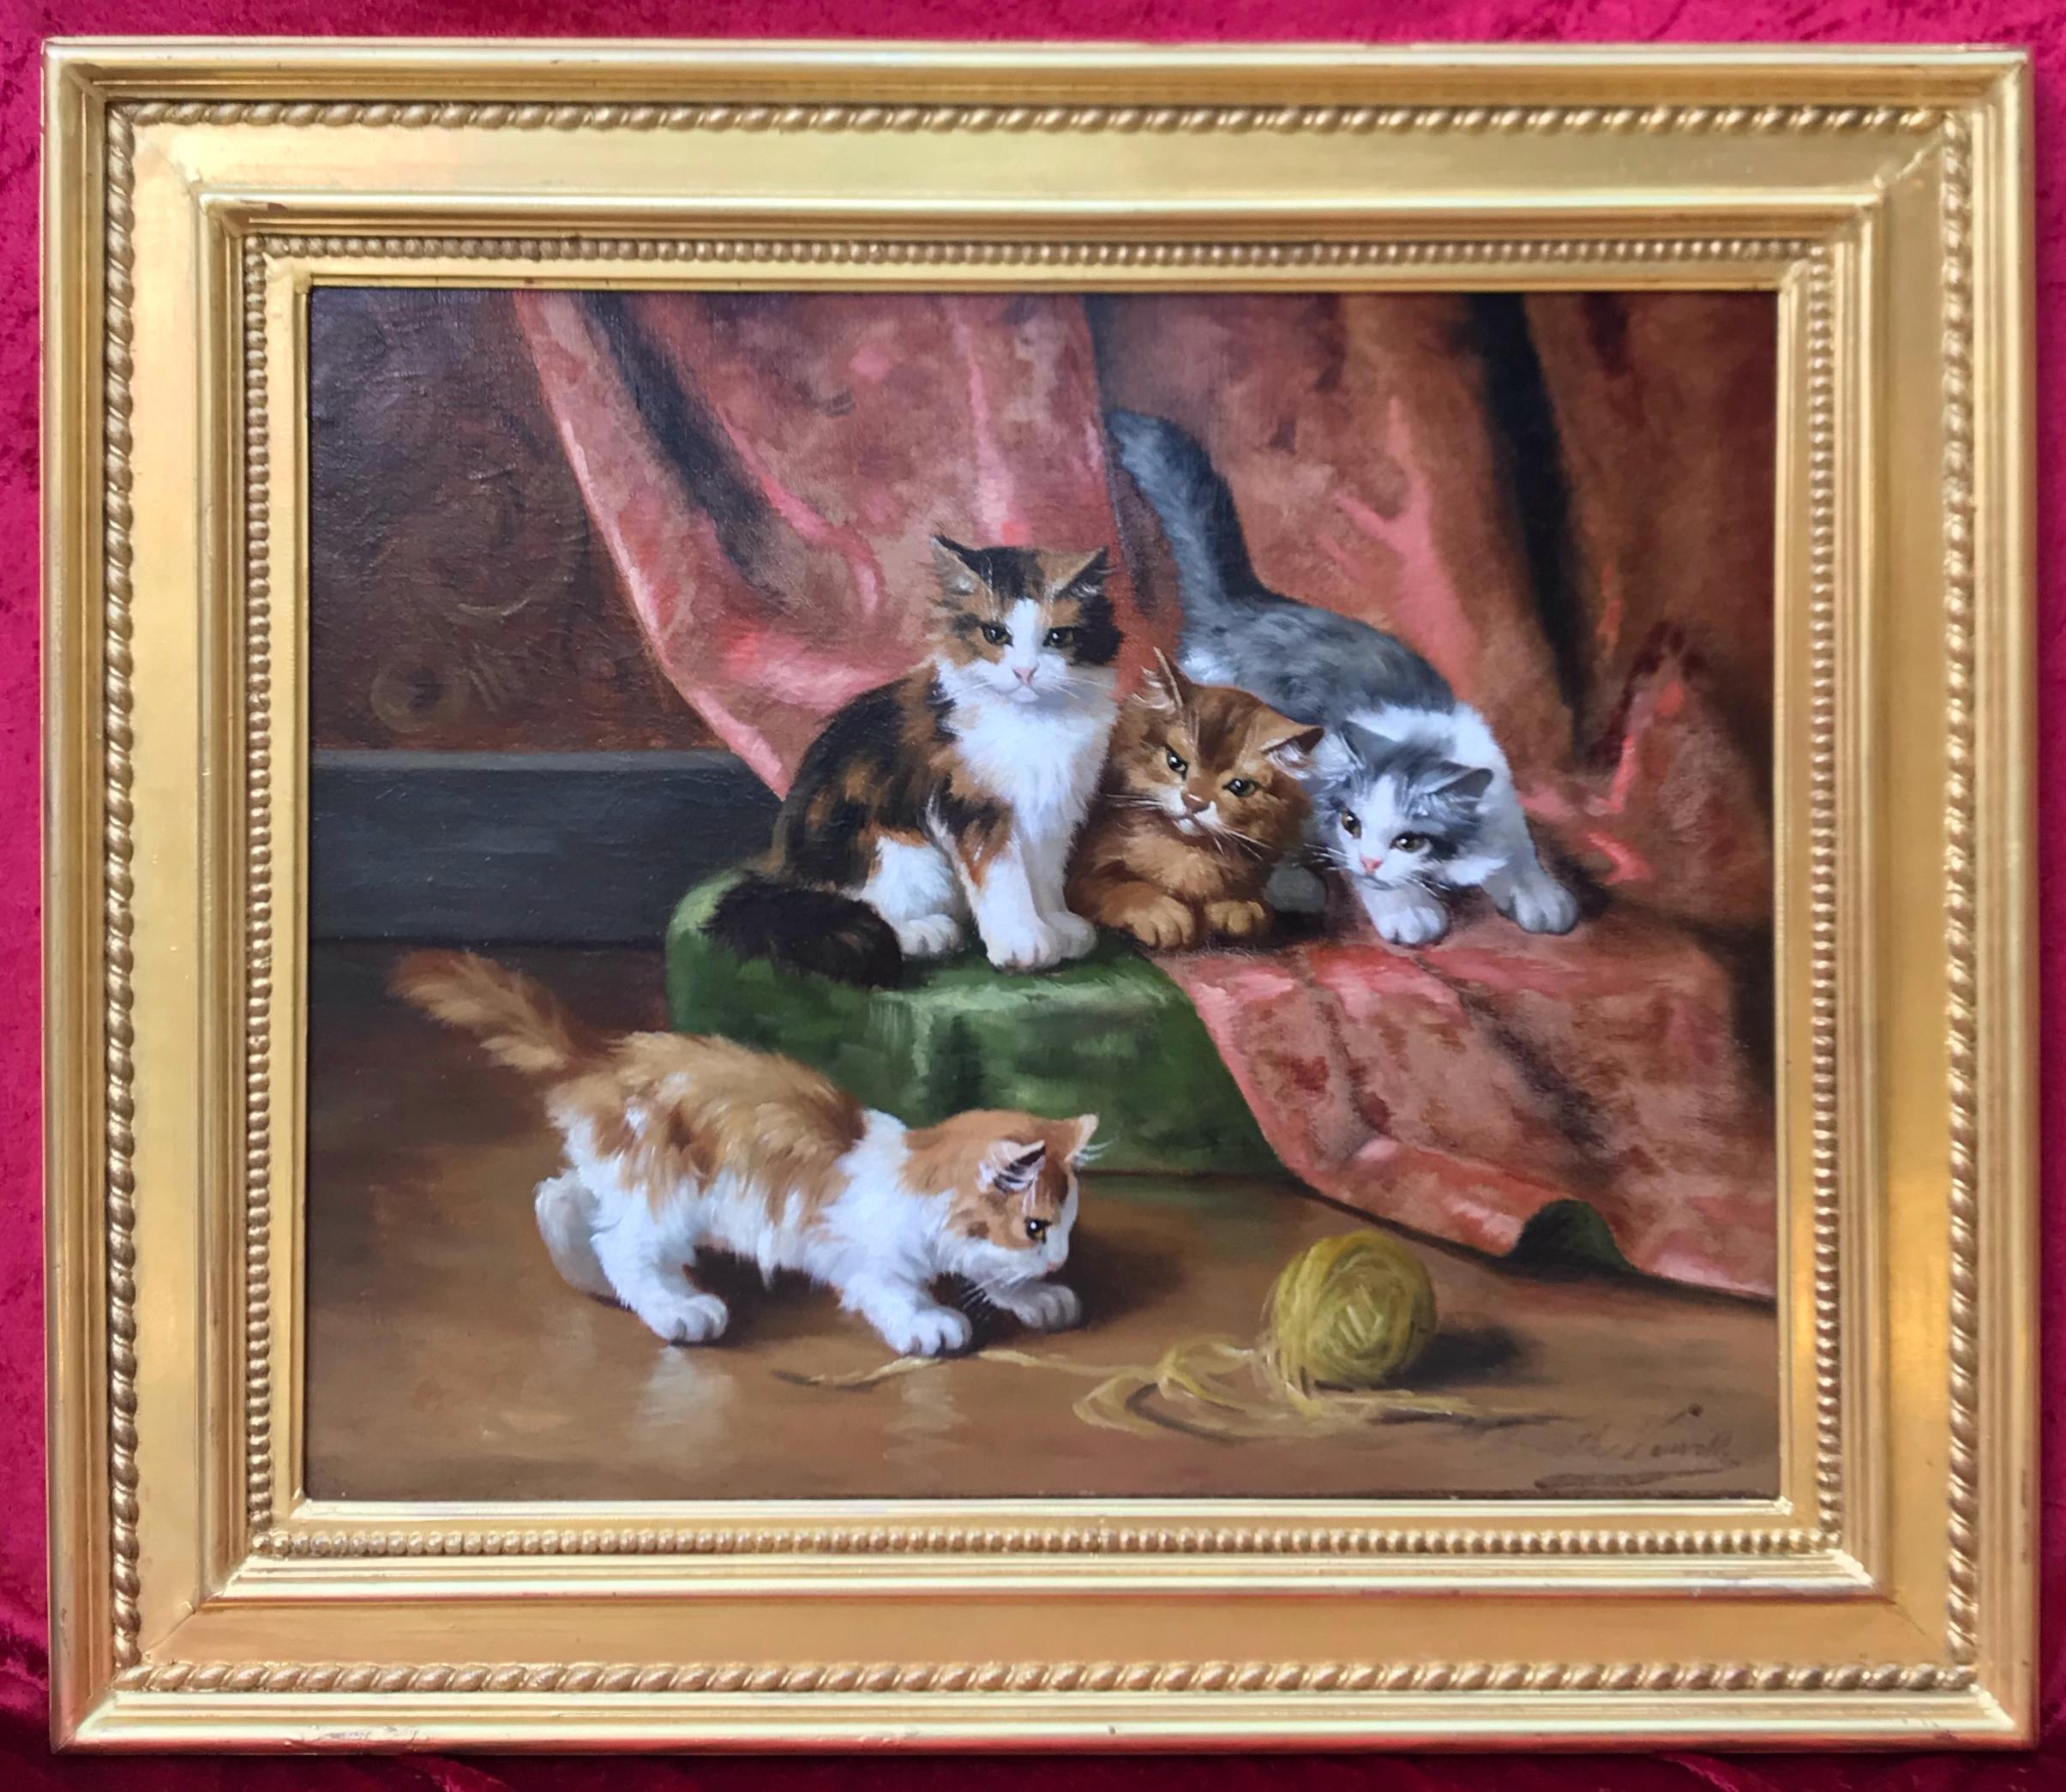 Gemälde von Tieren in Interieur Katzen